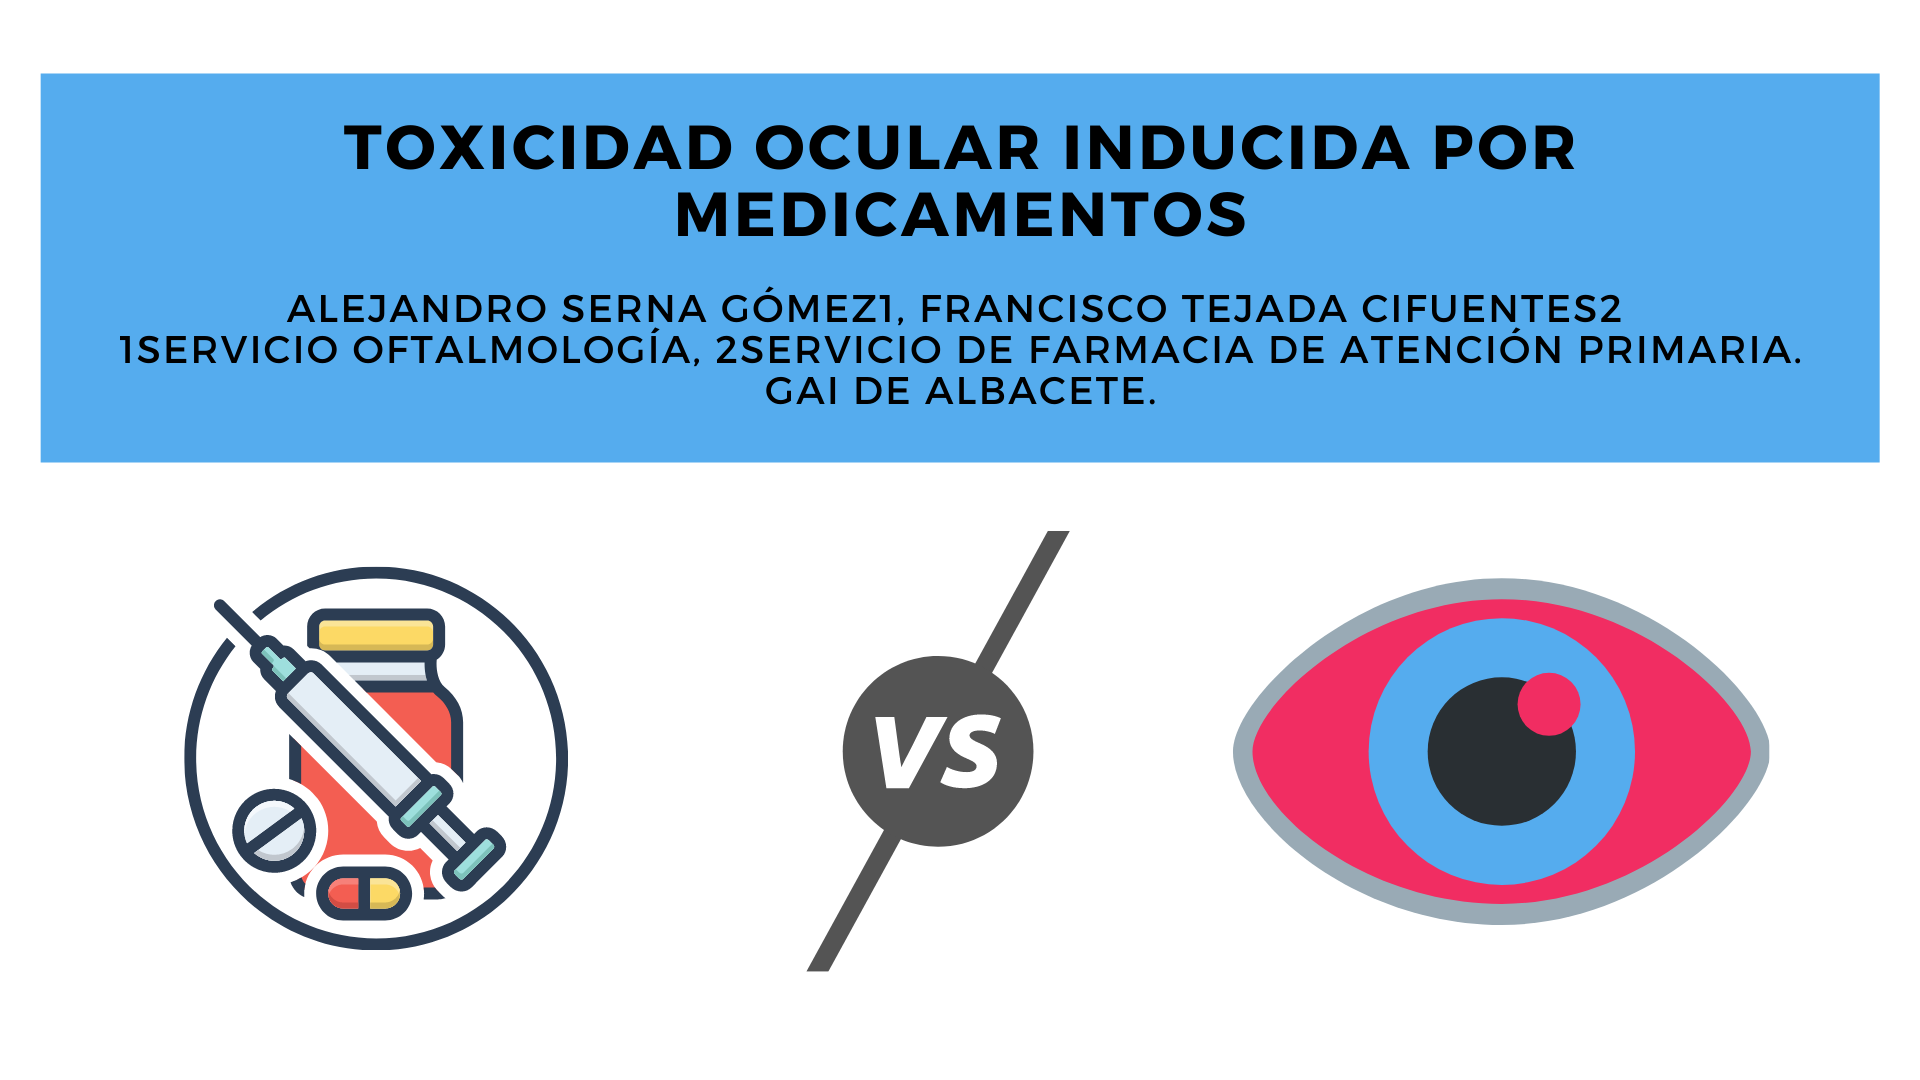 Toxicidad ocular inducida por medicamentos